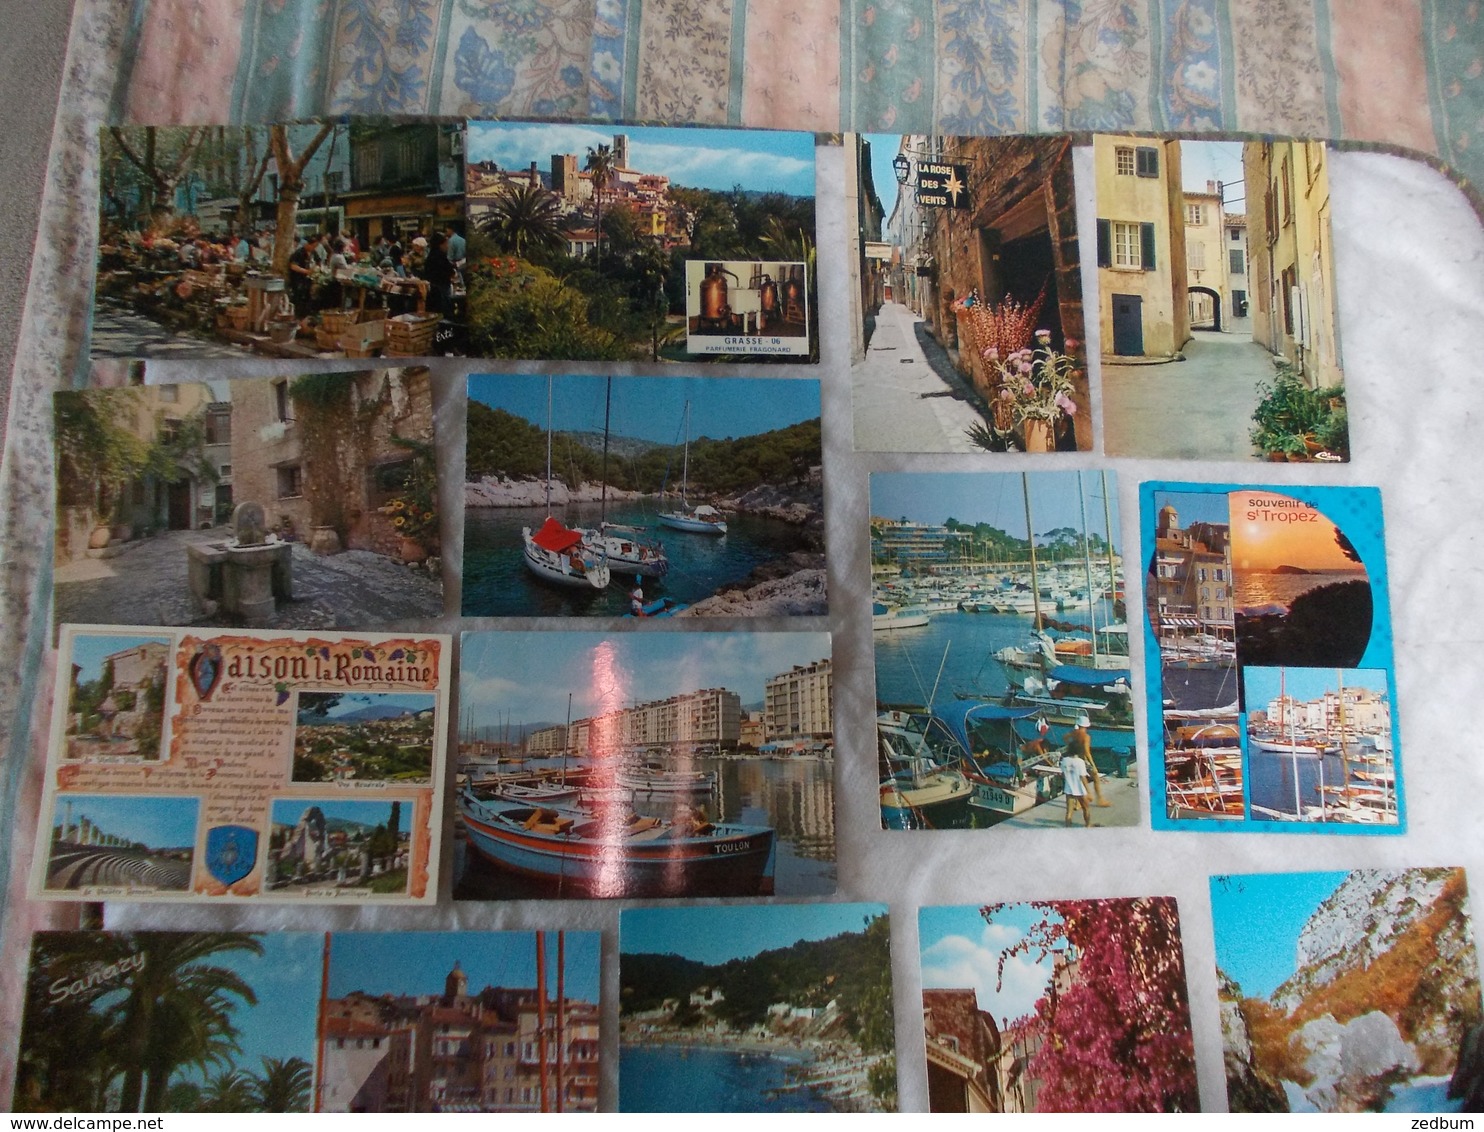 Lot de 66 cartes Postales de la Cote d'Azur Provence Var ou Saint Tropez